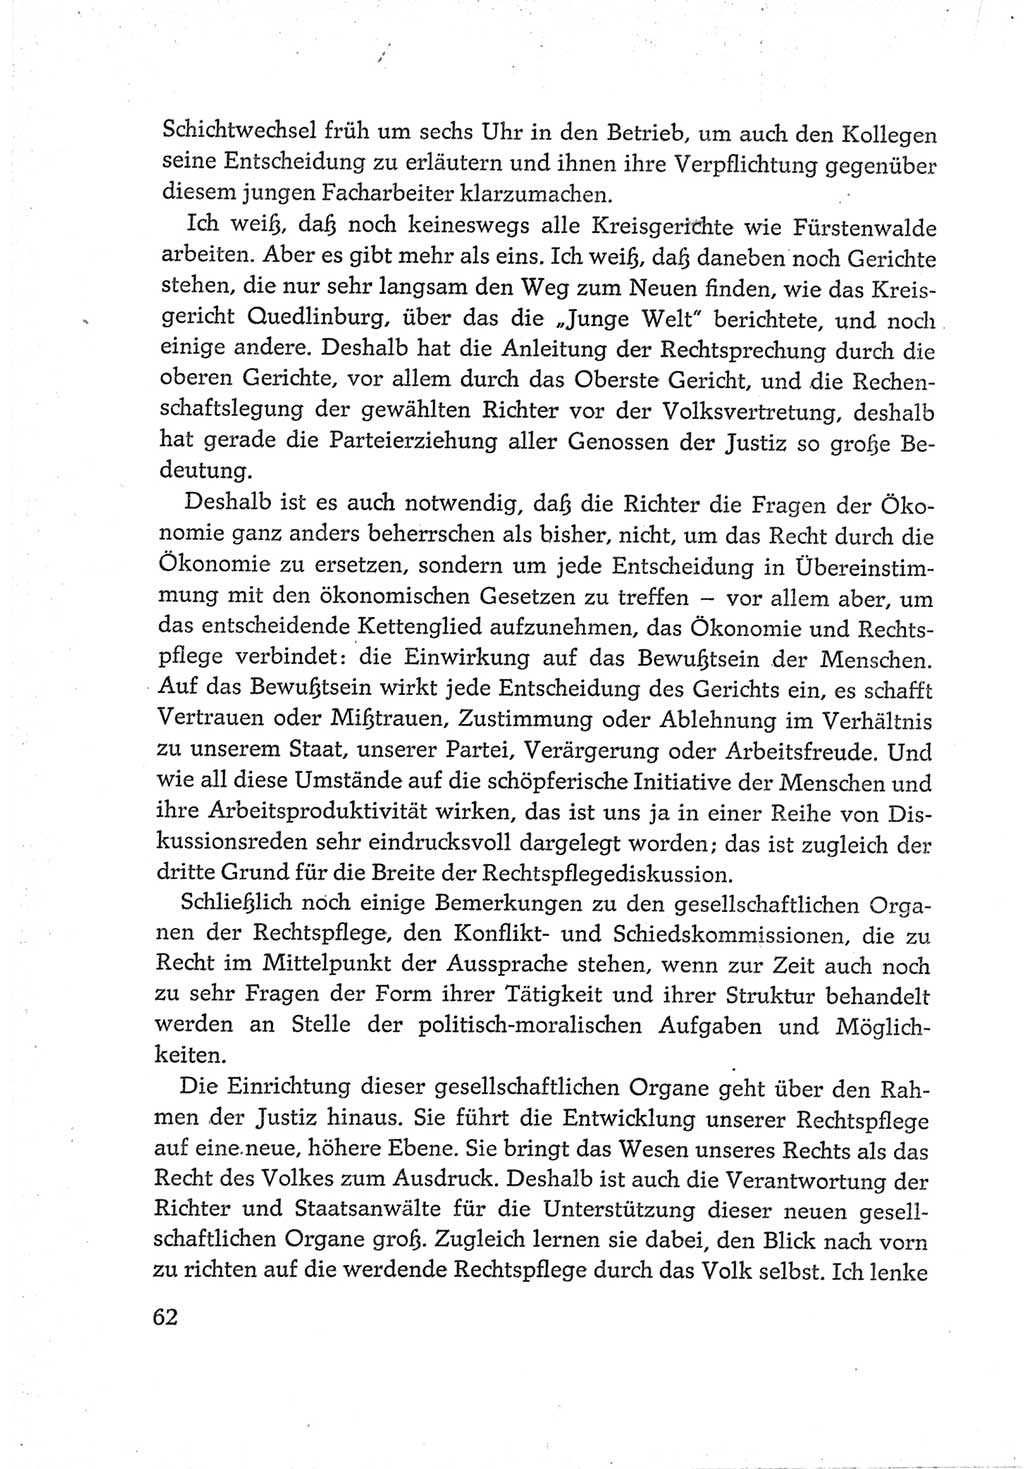 Protokoll der Verhandlungen des Ⅵ. Parteitages der Sozialistischen Einheitspartei Deutschlands (SED) [Deutsche Demokratische Republik (DDR)] 1963, Band Ⅲ, Seite 62 (Prot. Verh. Ⅵ. PT SED DDR 1963, Bd. Ⅲ, S. 62)